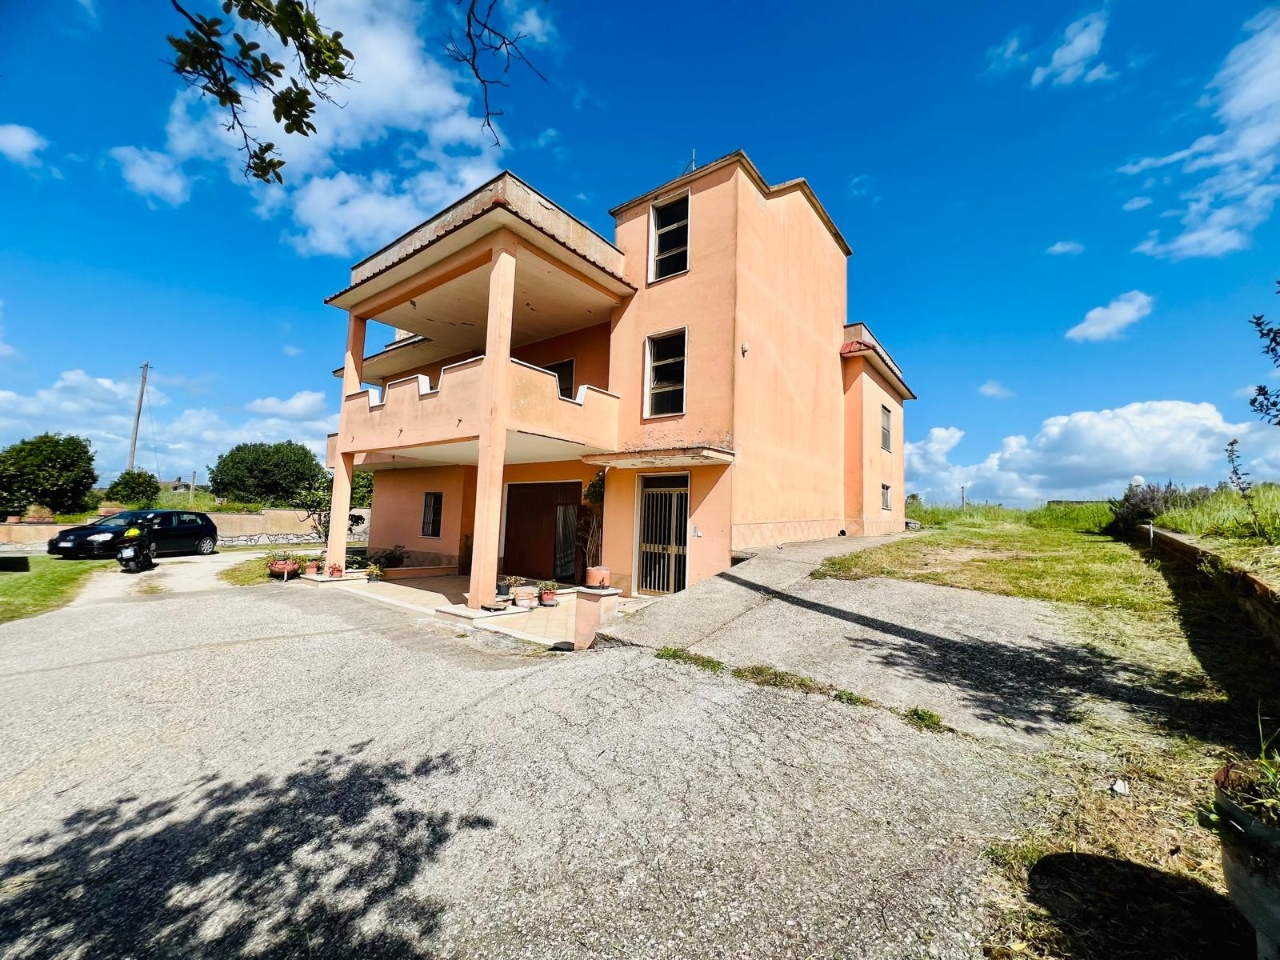 Villa unifamiliare in vendita a Aprilia